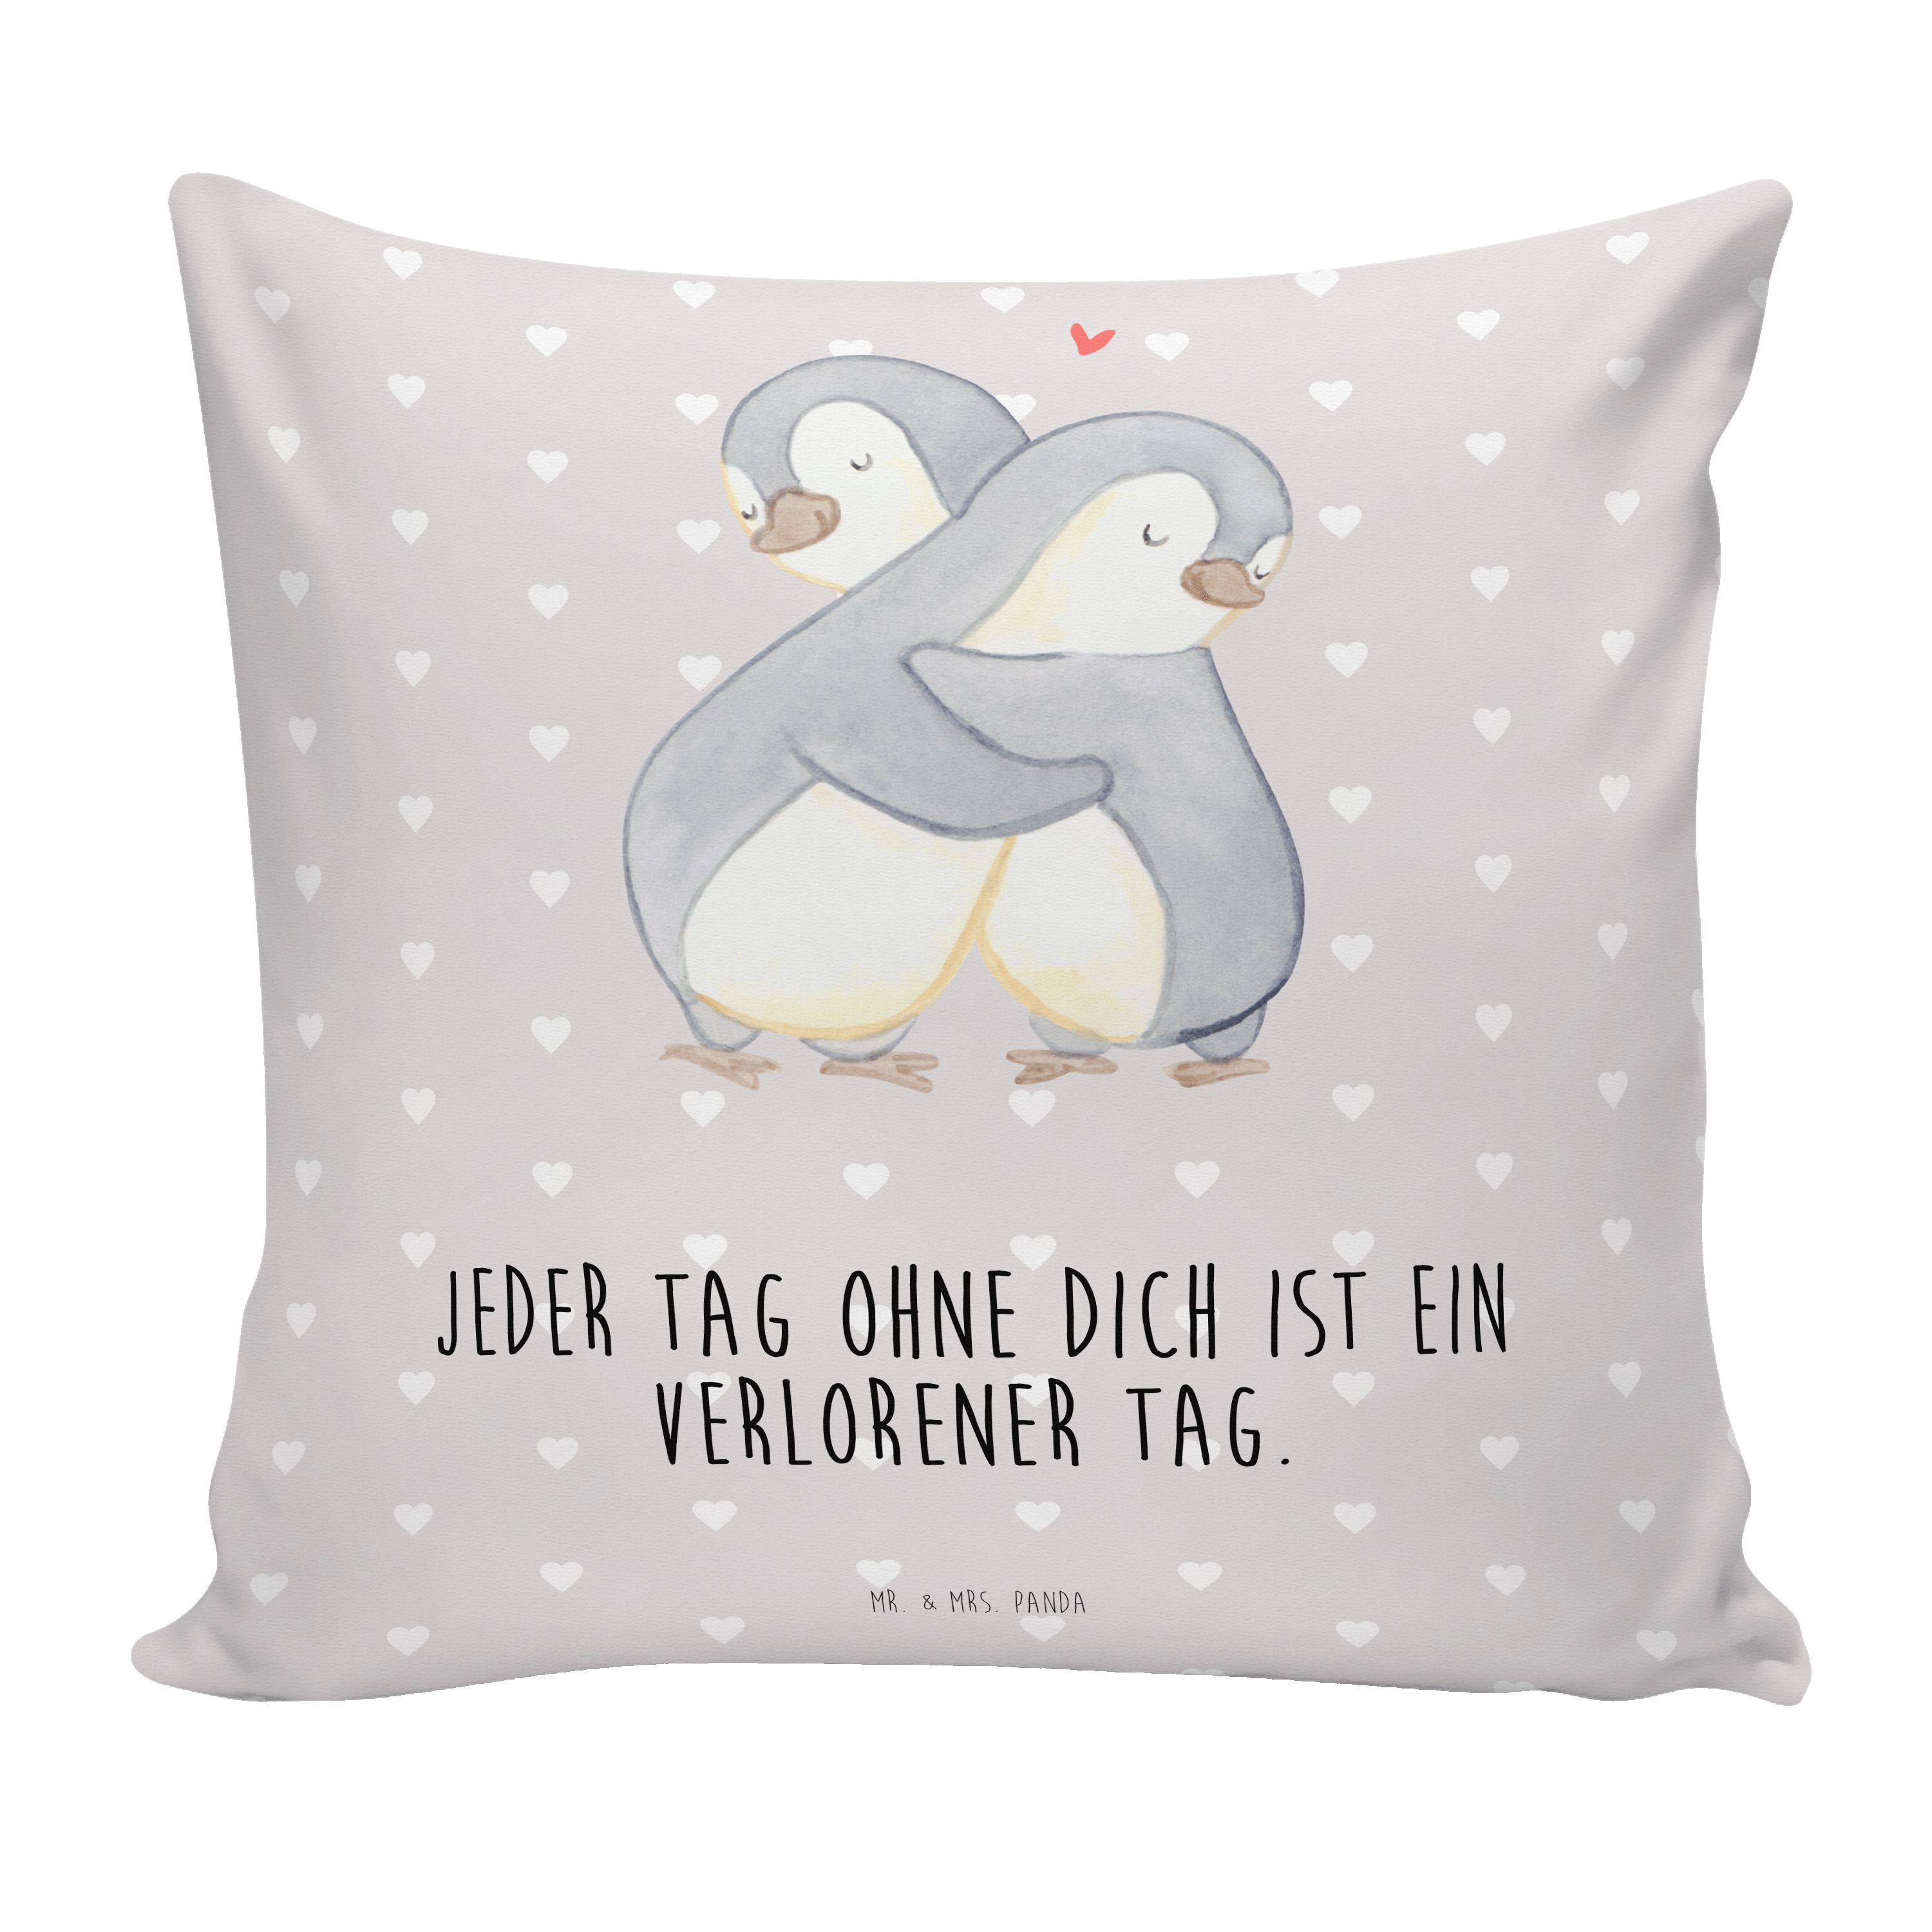 Mr. & Mrs. Panda Dekokissen Pinguine Kuscheln - Grau Pastell - Geschenk, Heiraten, Hochzeitstag